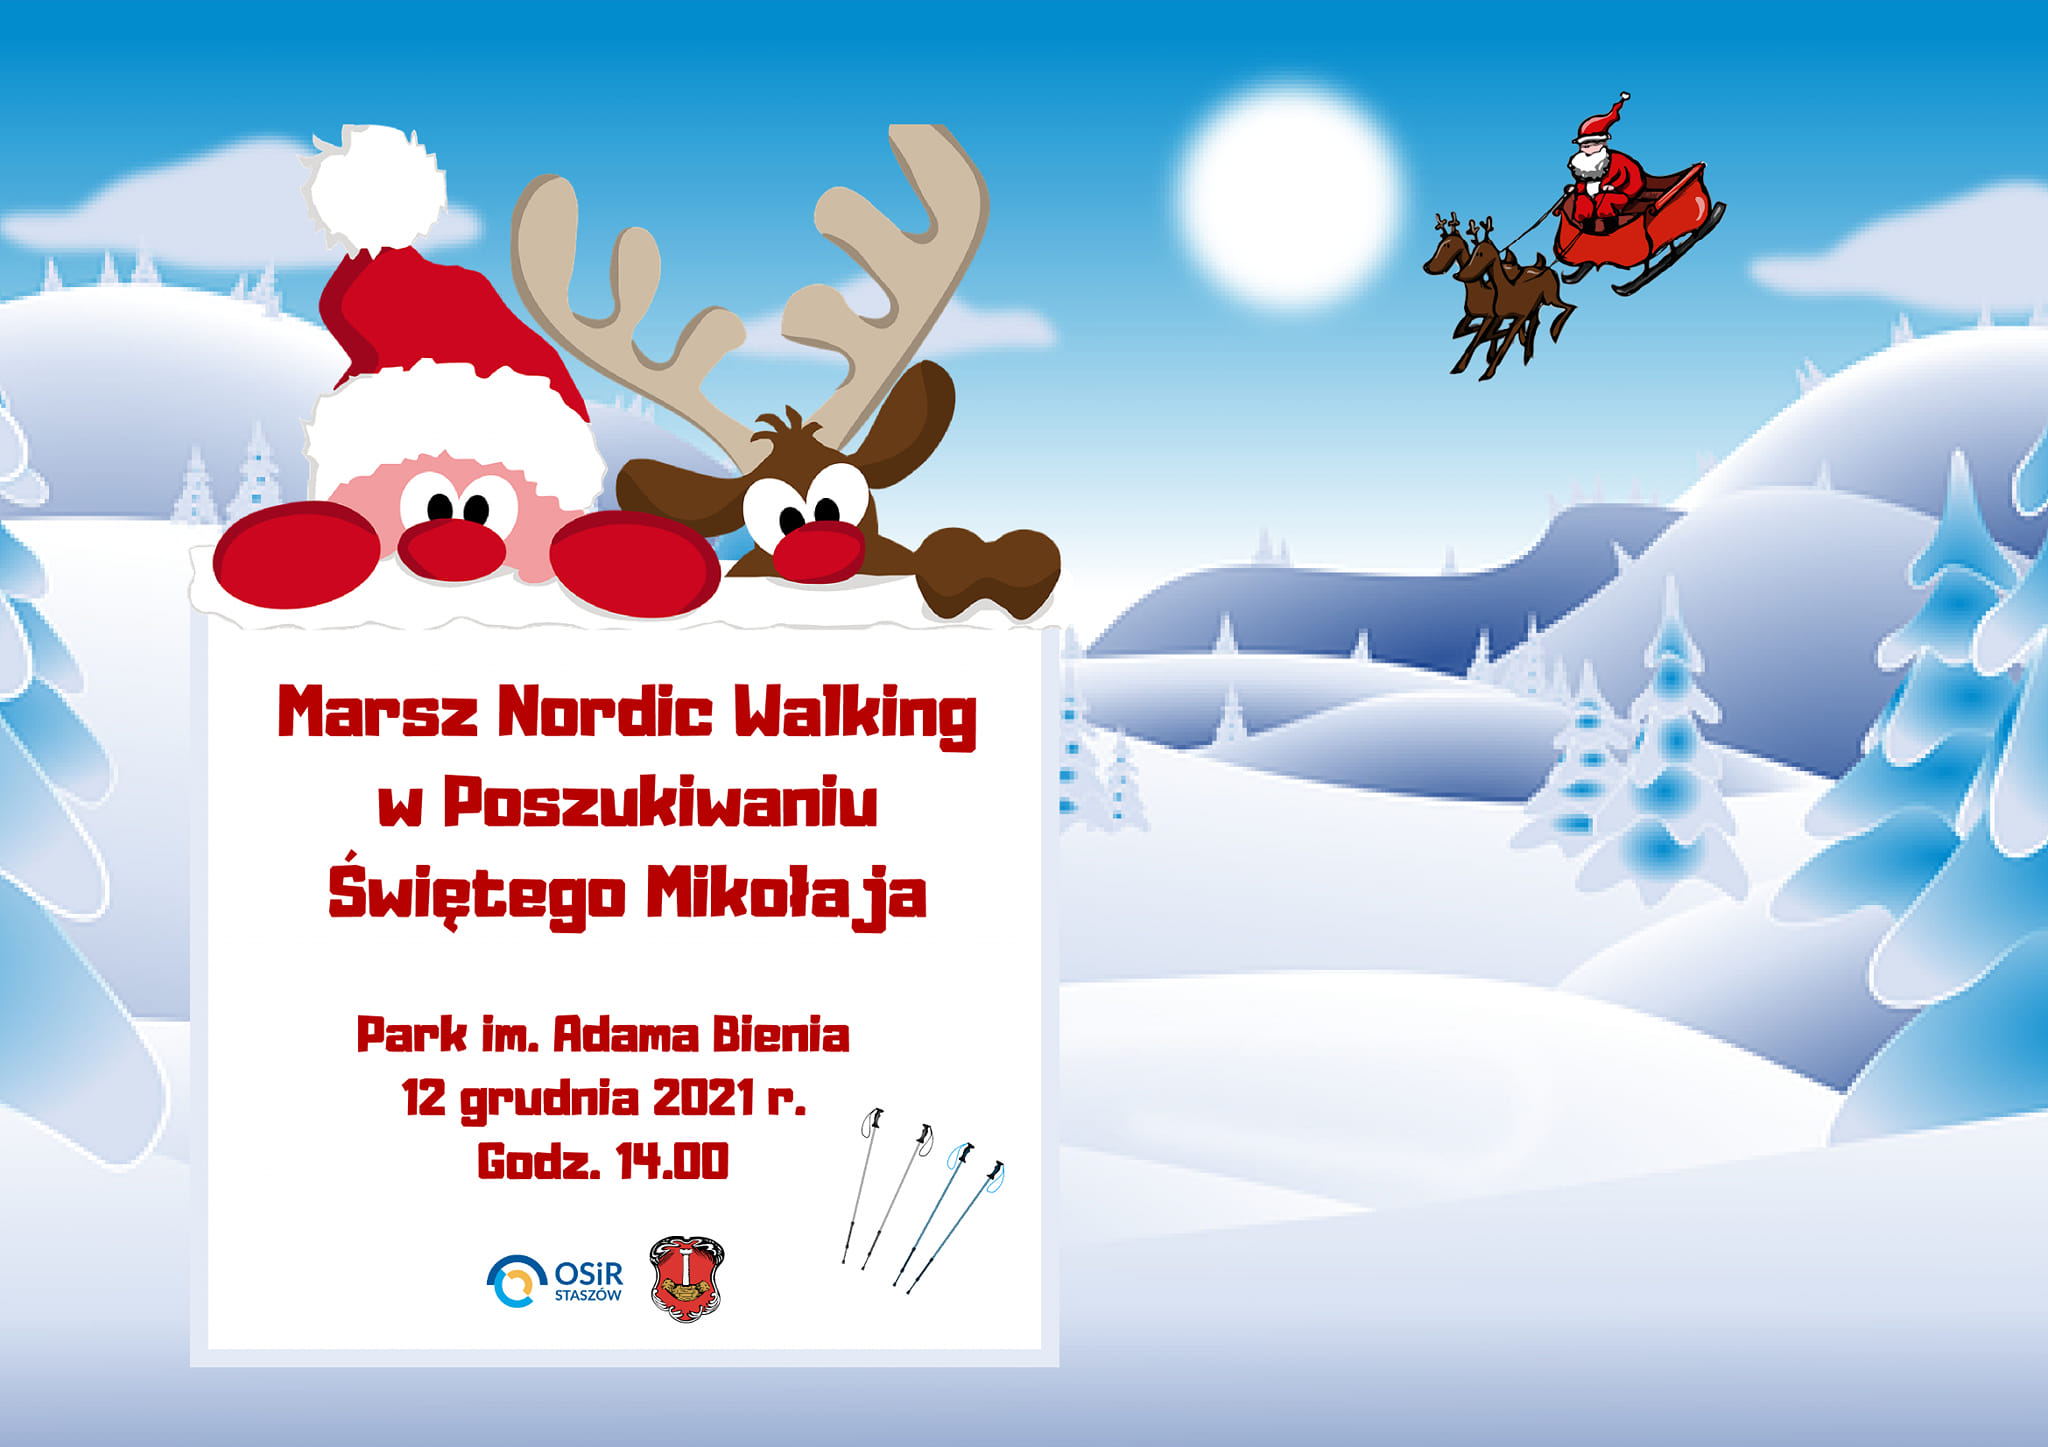 Plakat informacyjny: Zapraszamy  wszystkich sympatyków Nordic Walking na VII Marsz Nordic Walking w poszukiwaniu św. Mikołaja, który odbędzie się w niedzielę 12 grudnia. Marsz rozpocznie się o godzinie 14:00. na terenie Parku im. Adama Bienia.